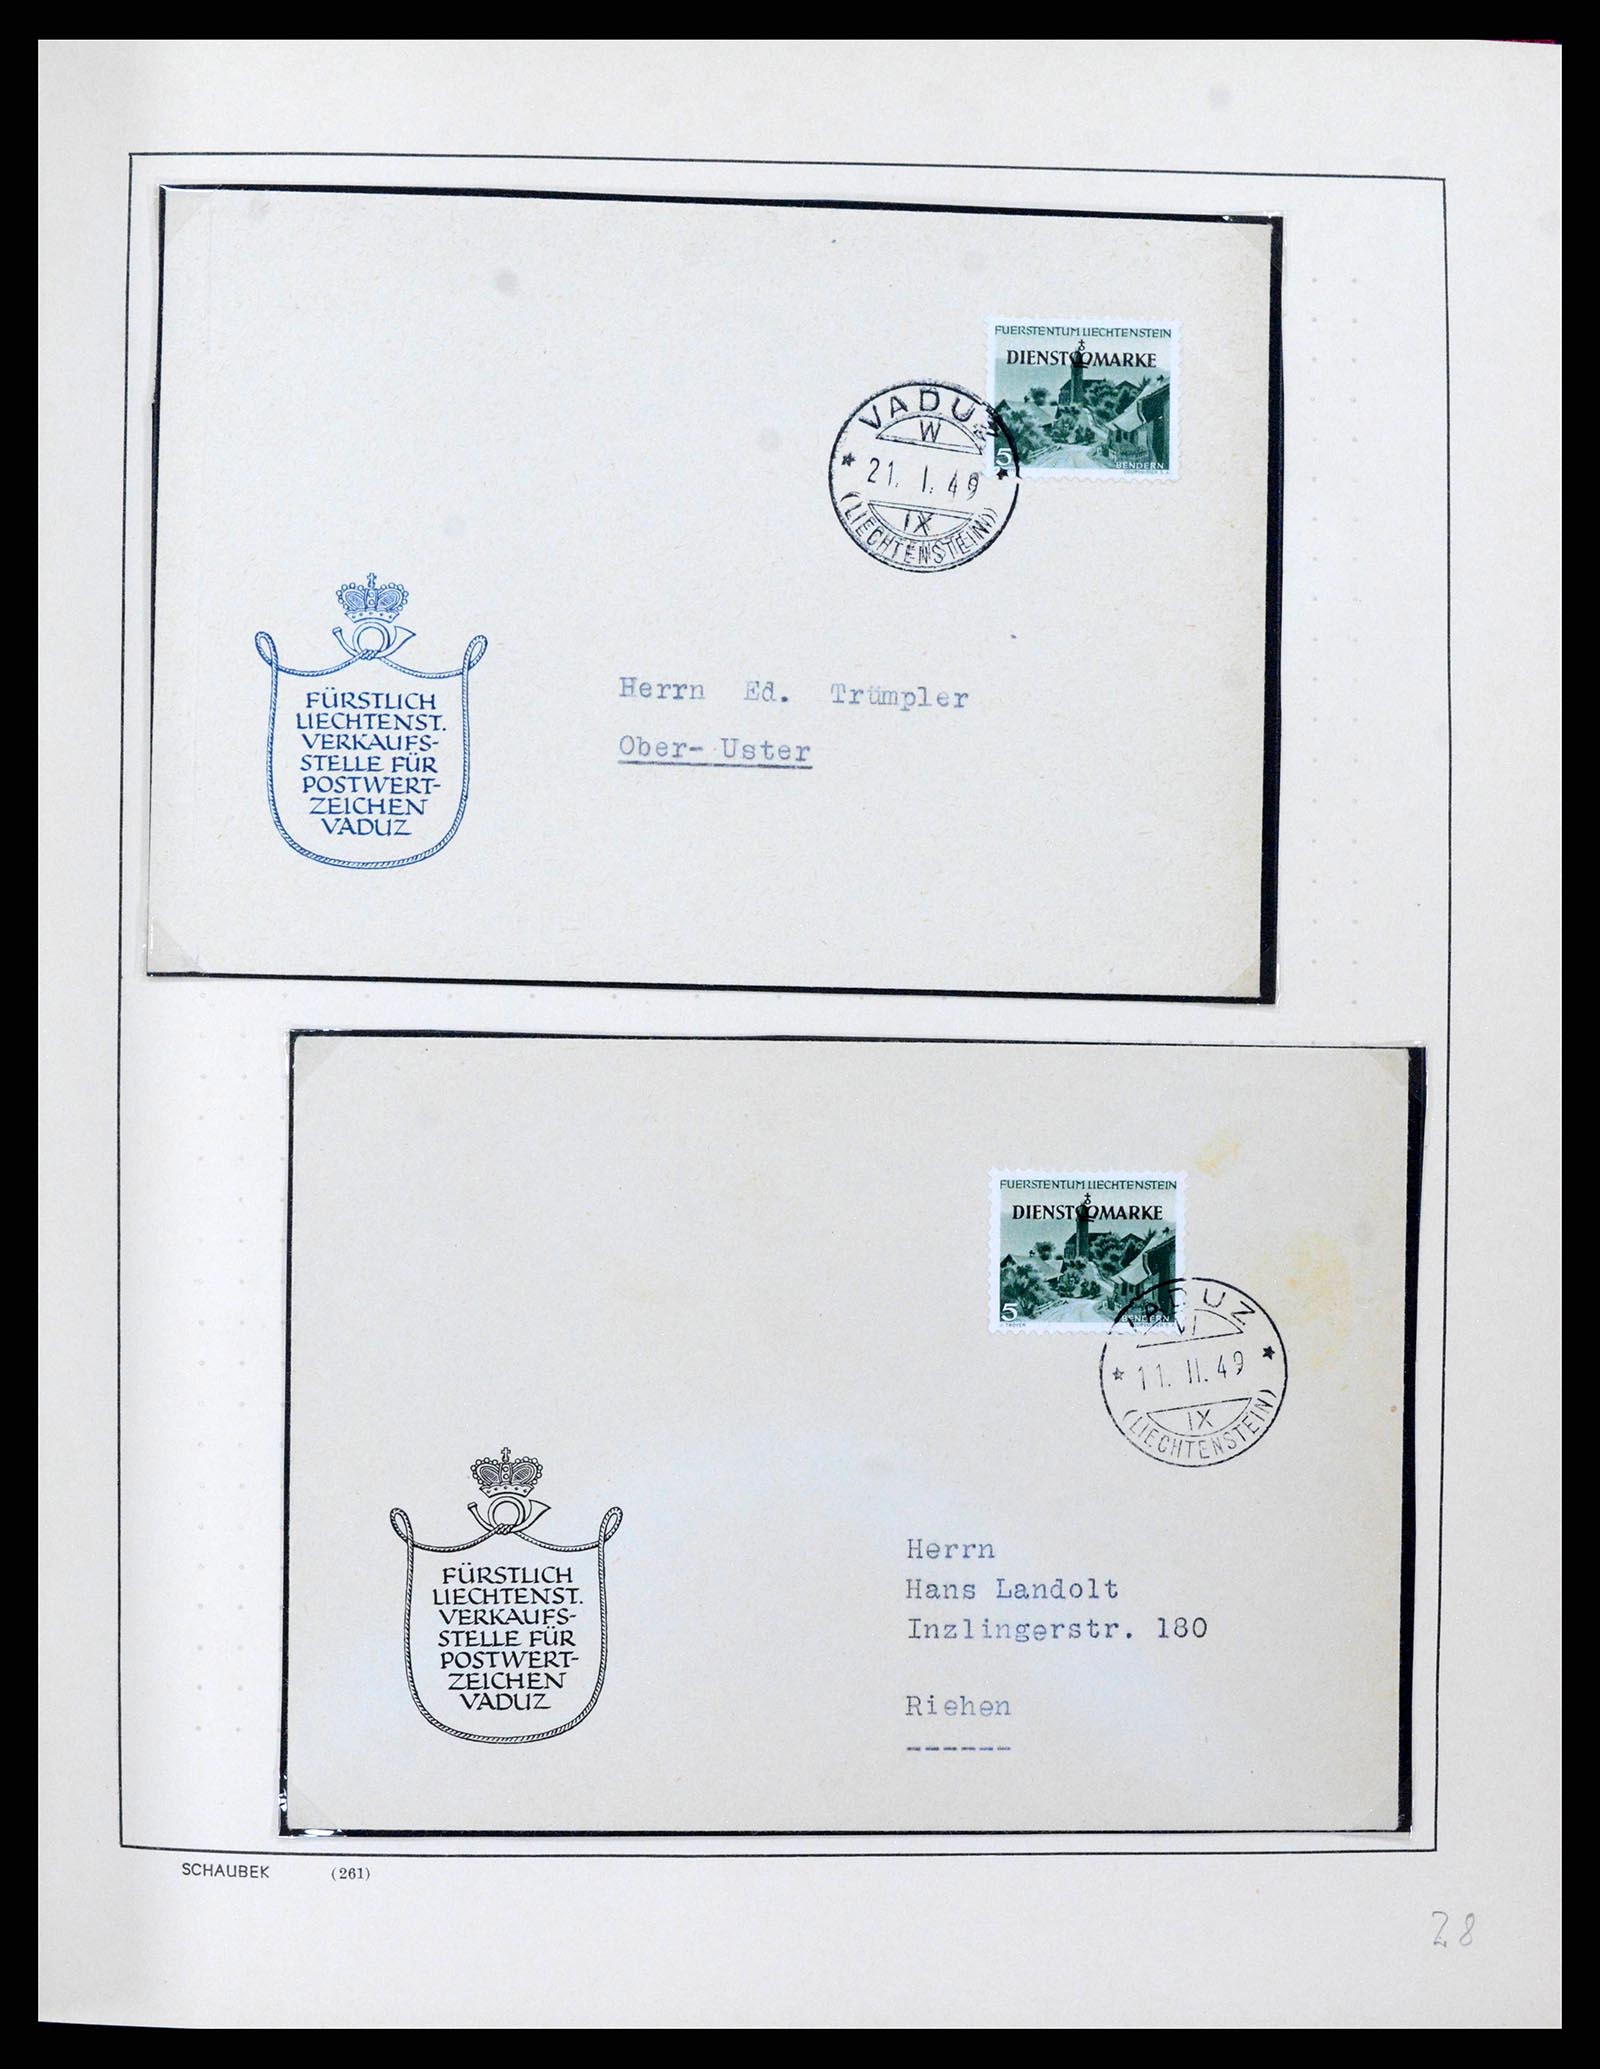 38204 0030 - Stamp collection 38204 Liechtenstein service covers 1932-1989.